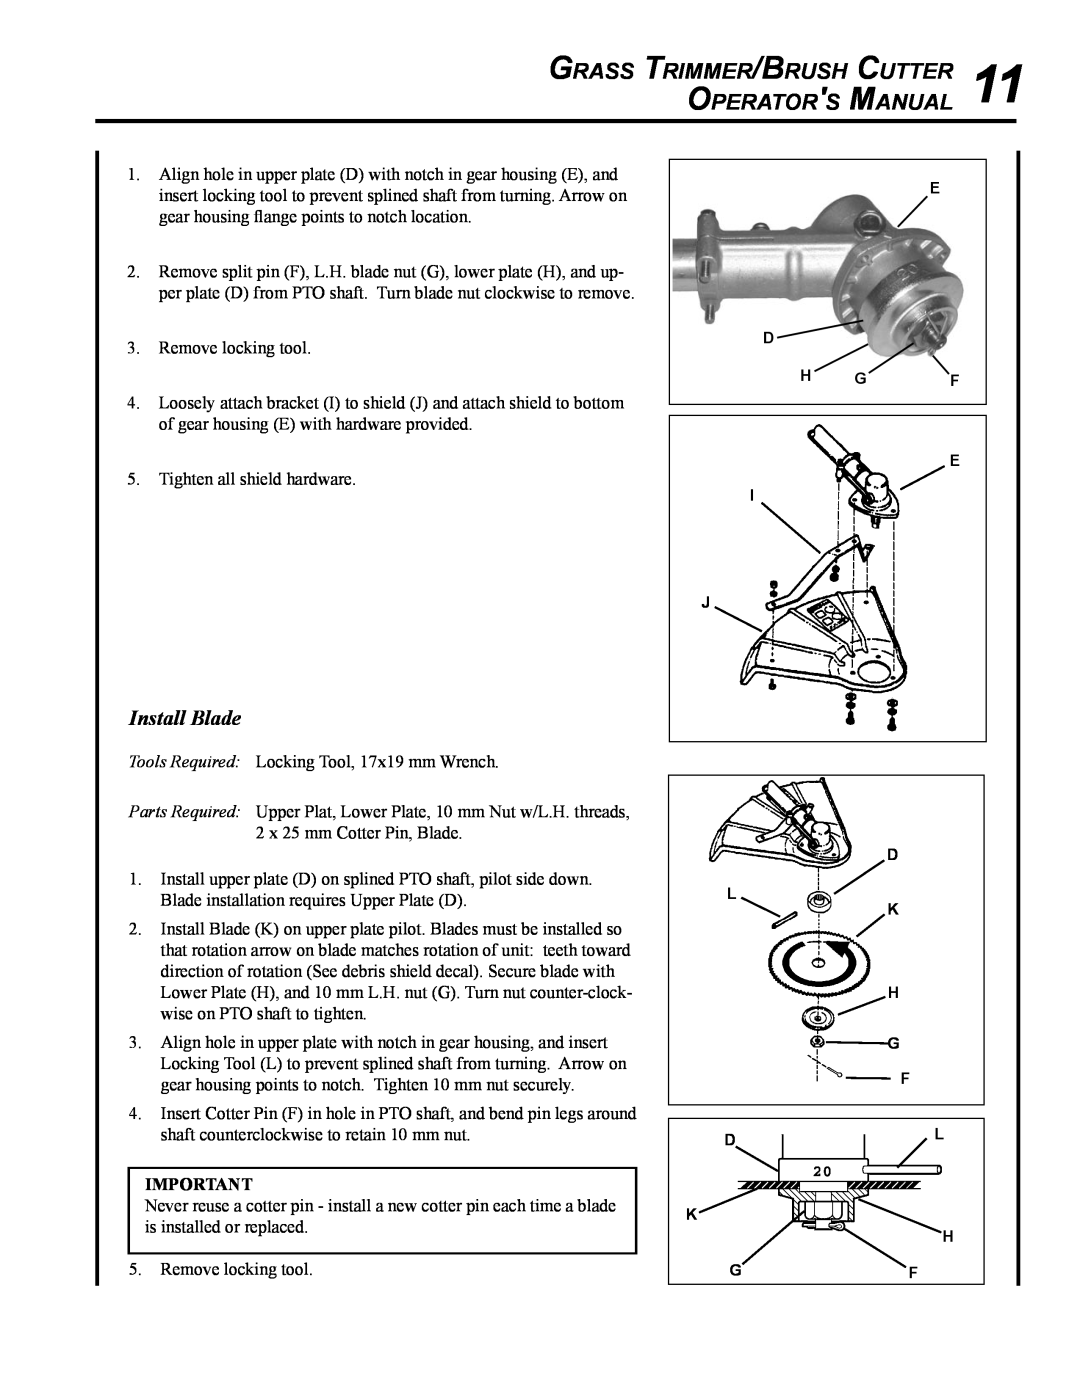 Echo SRM - 410U manual Grass Trimmer/Brush Cutter 11 Operators Manual, Install Blade 